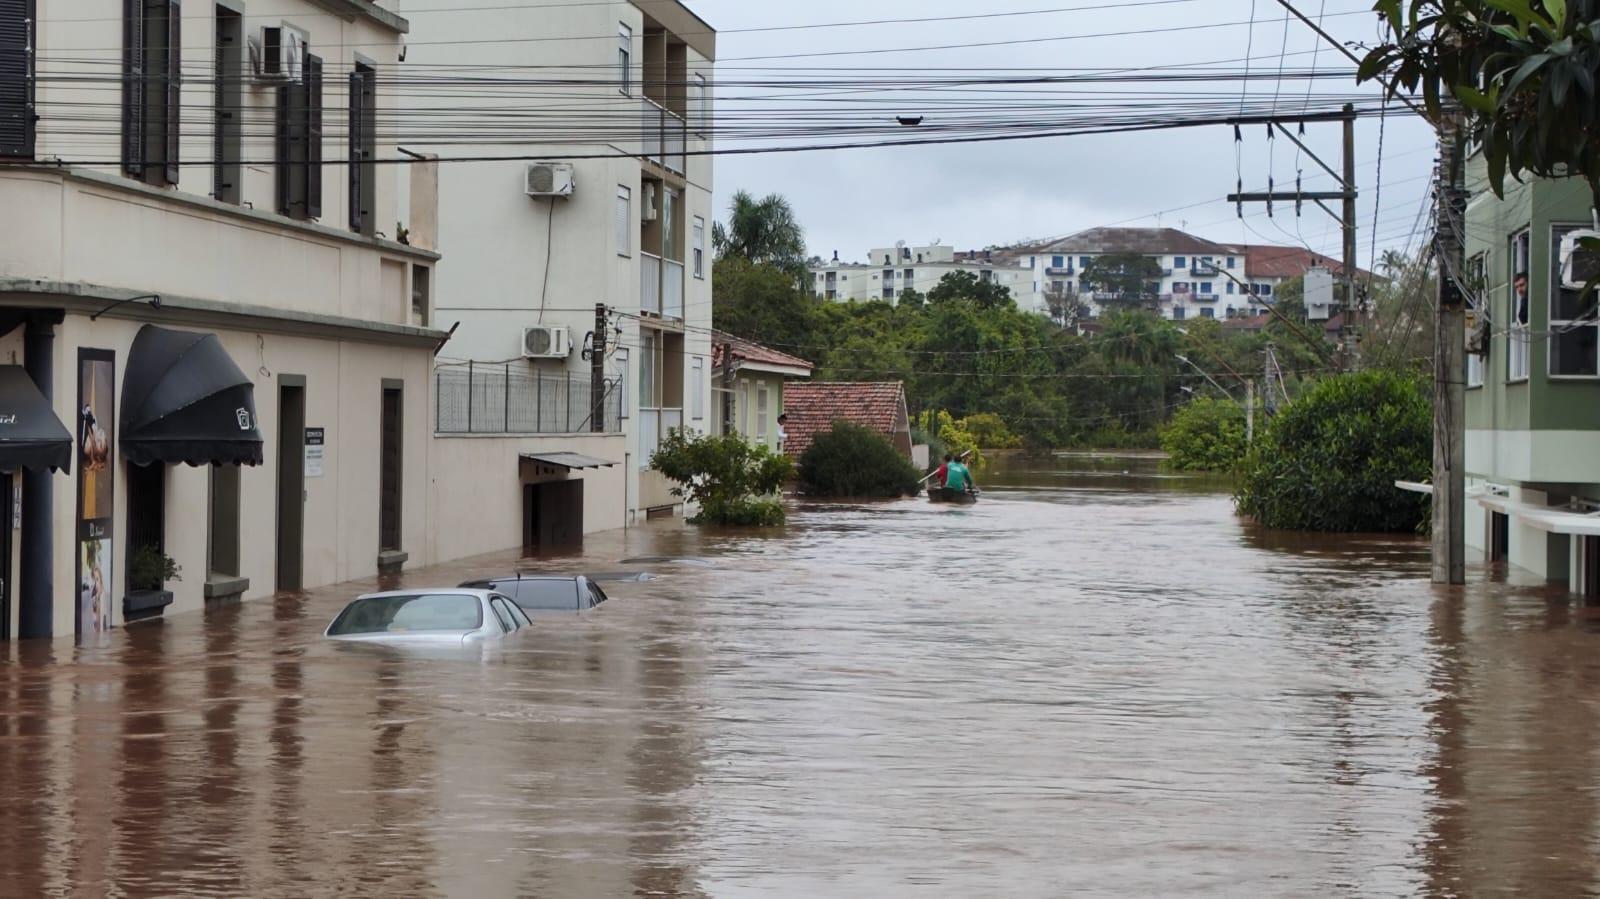 Enchente ocorreu no início de setembro e trouxe prejuízos a vários municípios da região